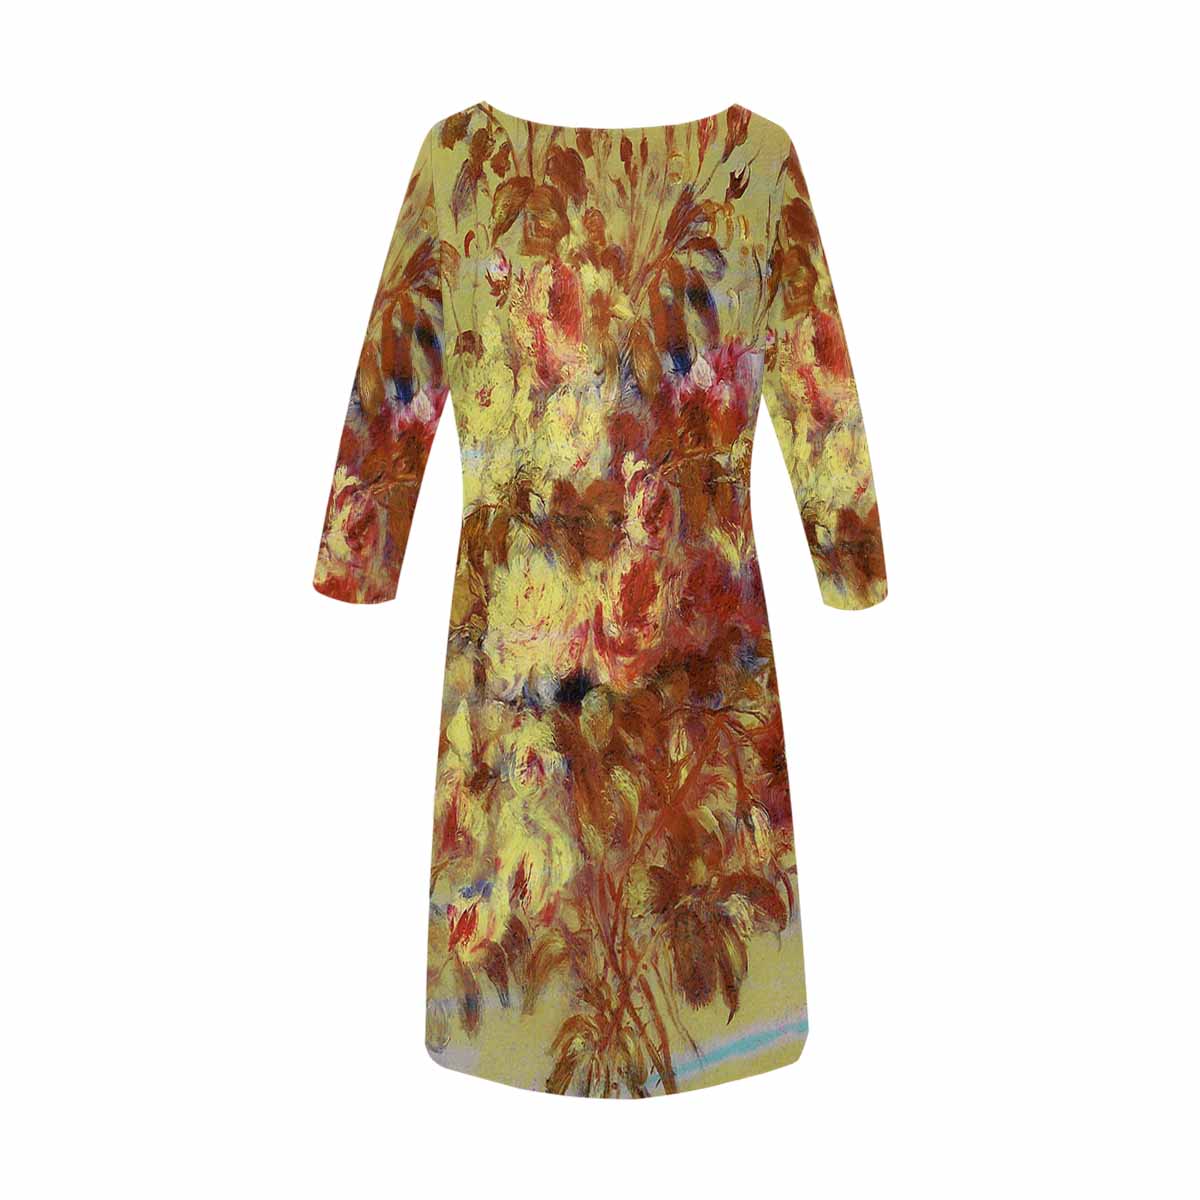 Vintage floral loose dress, model D29532 Design 11